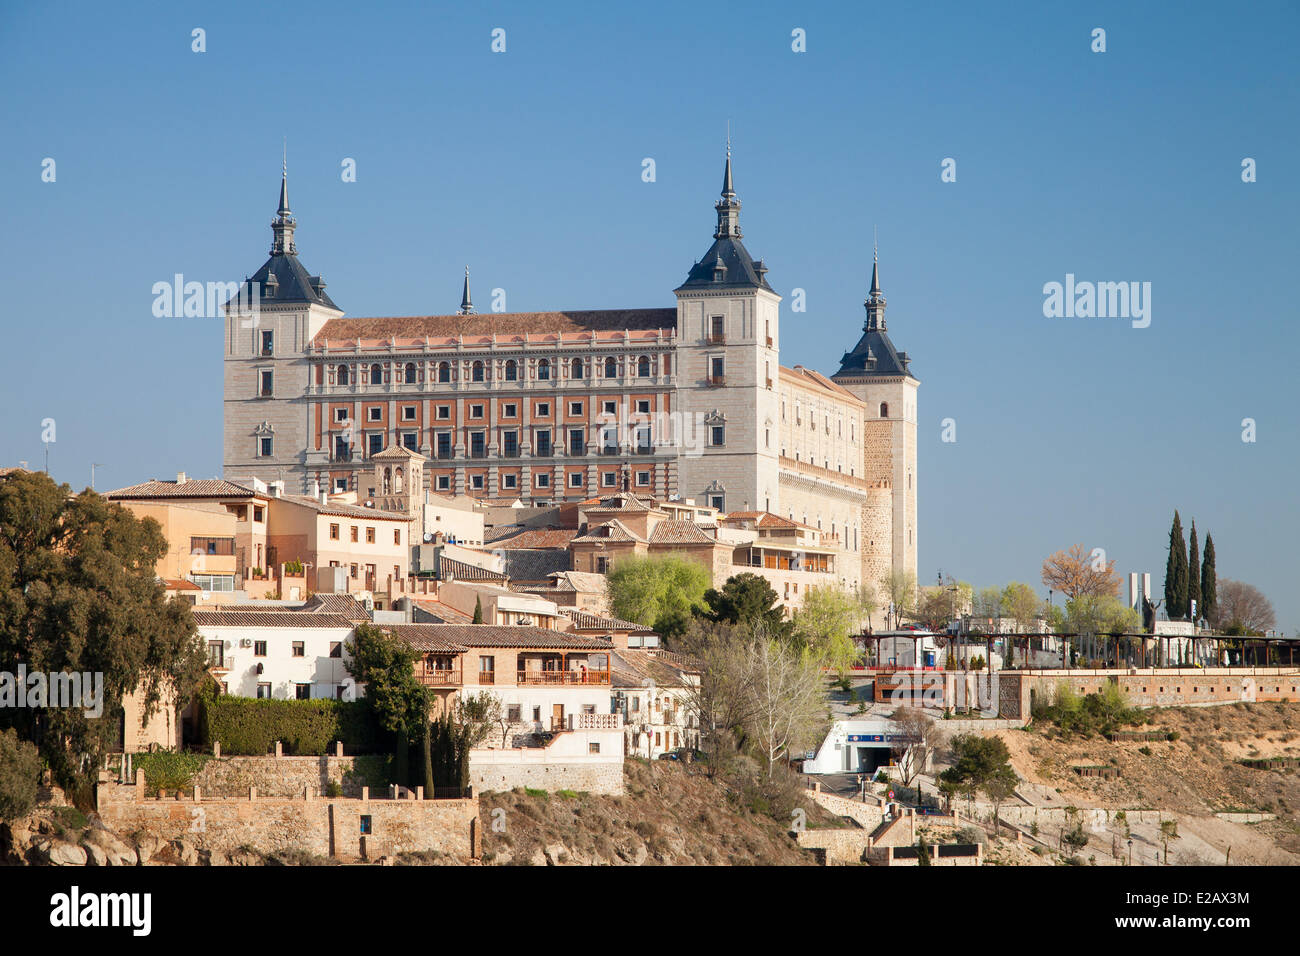 España, Castilla La Mancha, Toledo, el Alcázar, el centro histórico catalogado como Patrimonio de la Humanidad por la UNESCO Foto de stock